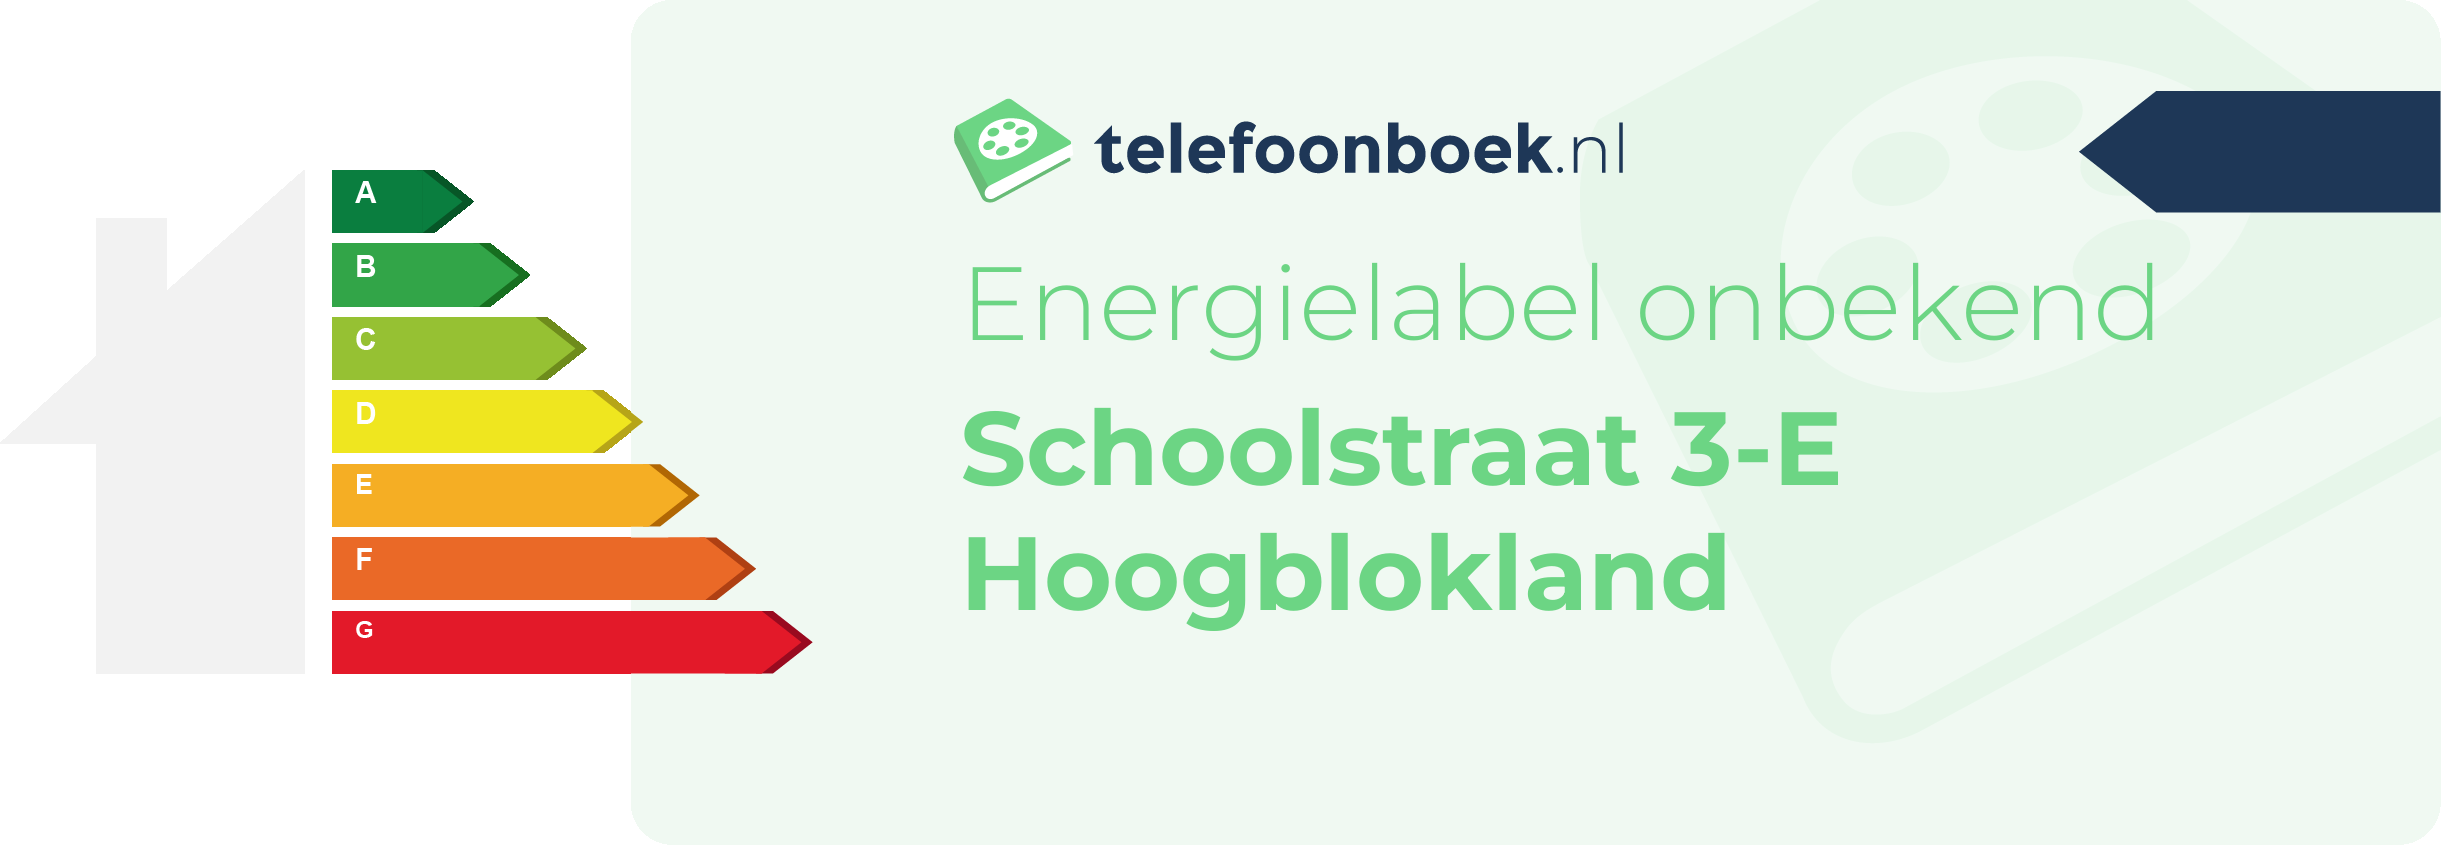 Energielabel Schoolstraat 3-E Hoogblokland